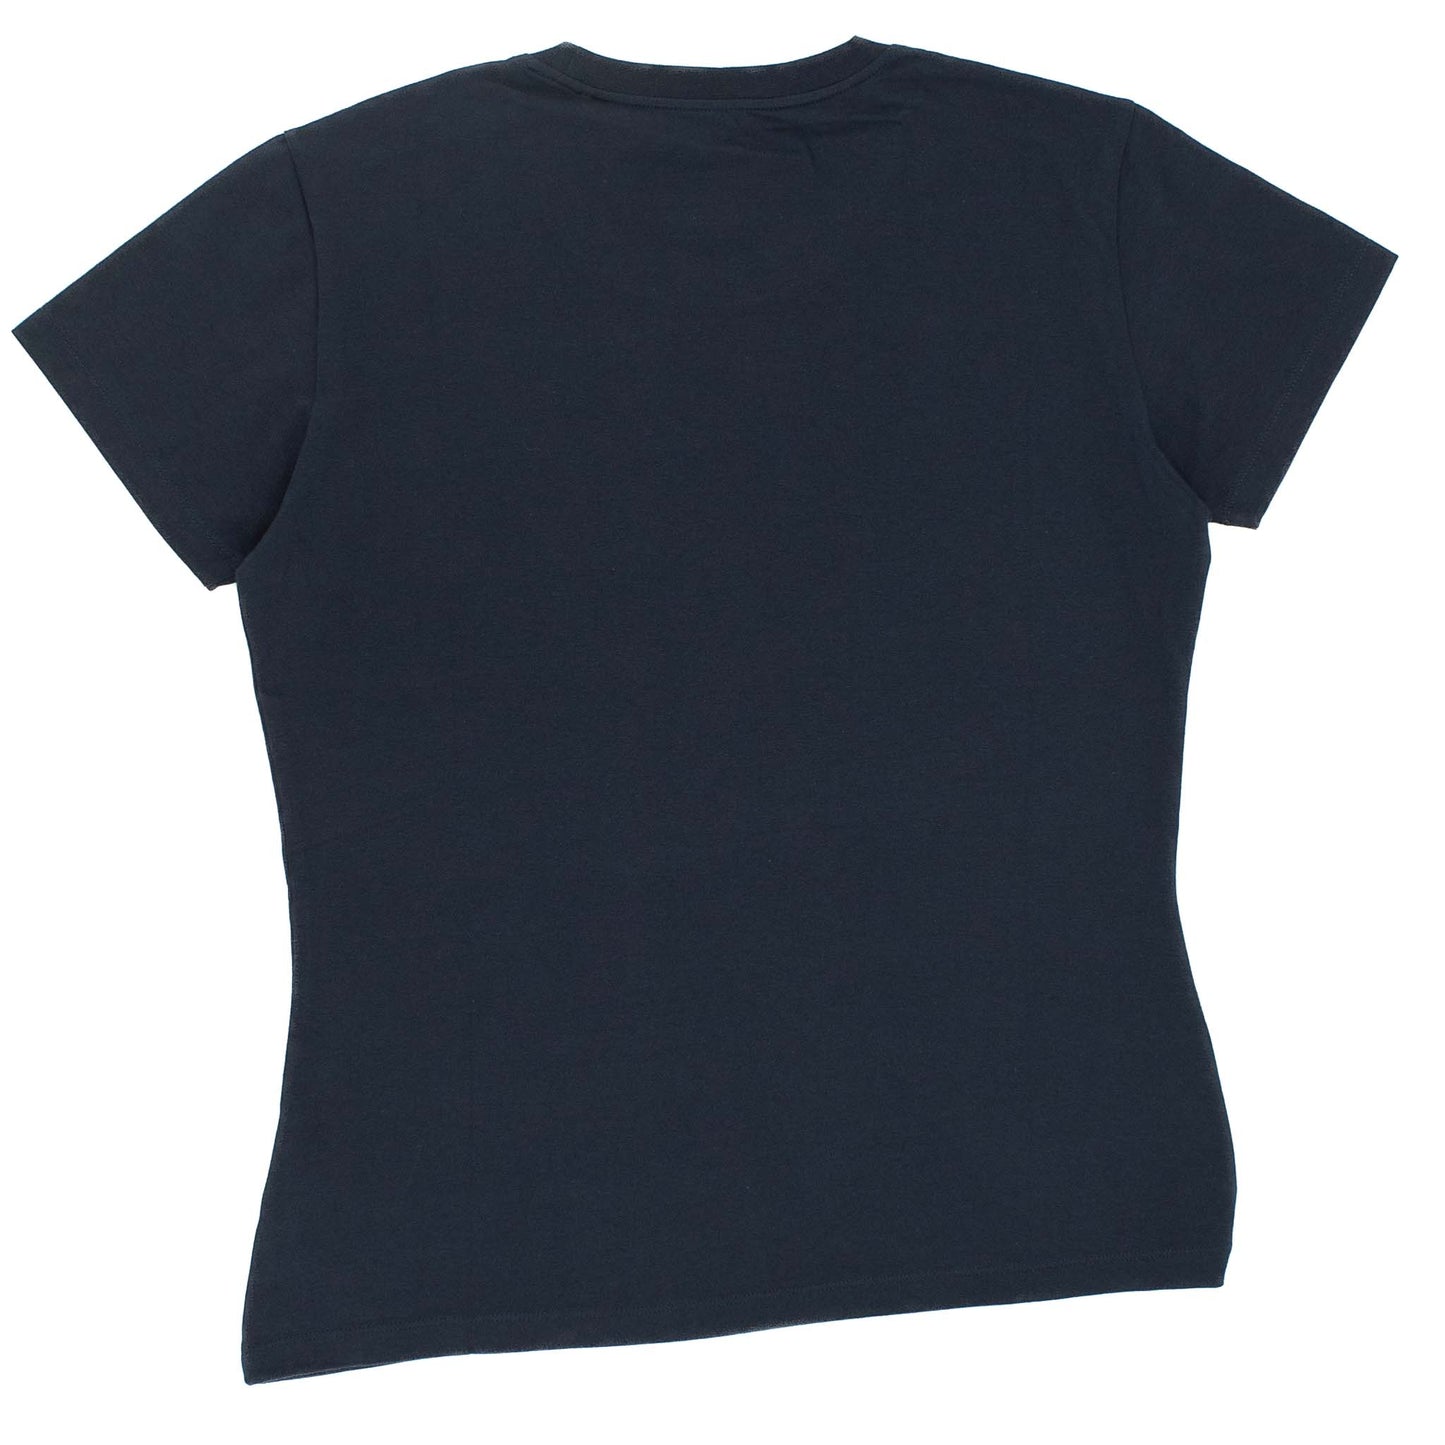 Jack Wolfskin T-Shirt Night Blue Damen kurzarm Shirt 5006401-1010-2